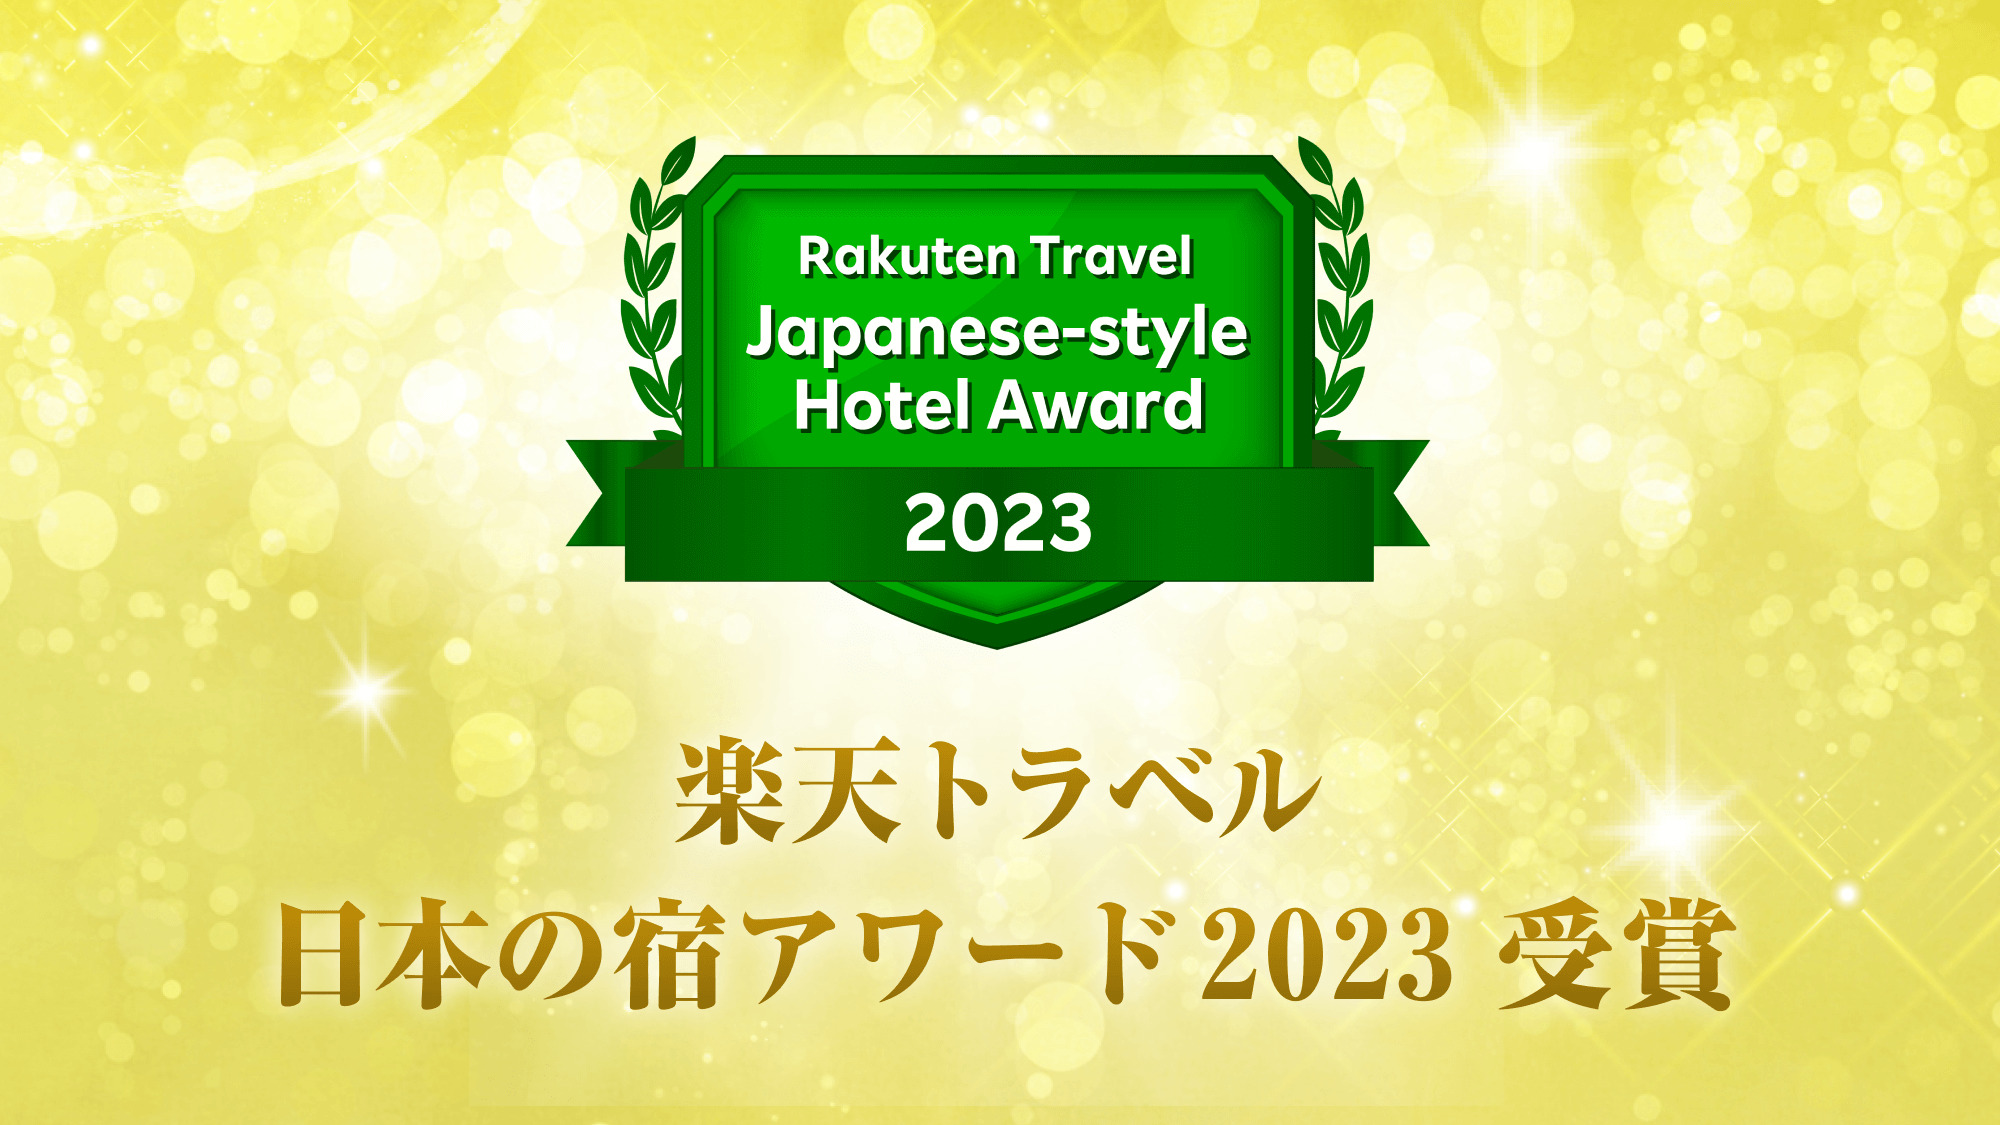 ■「楽天トラベル 日本の宿アワード 2023」受賞